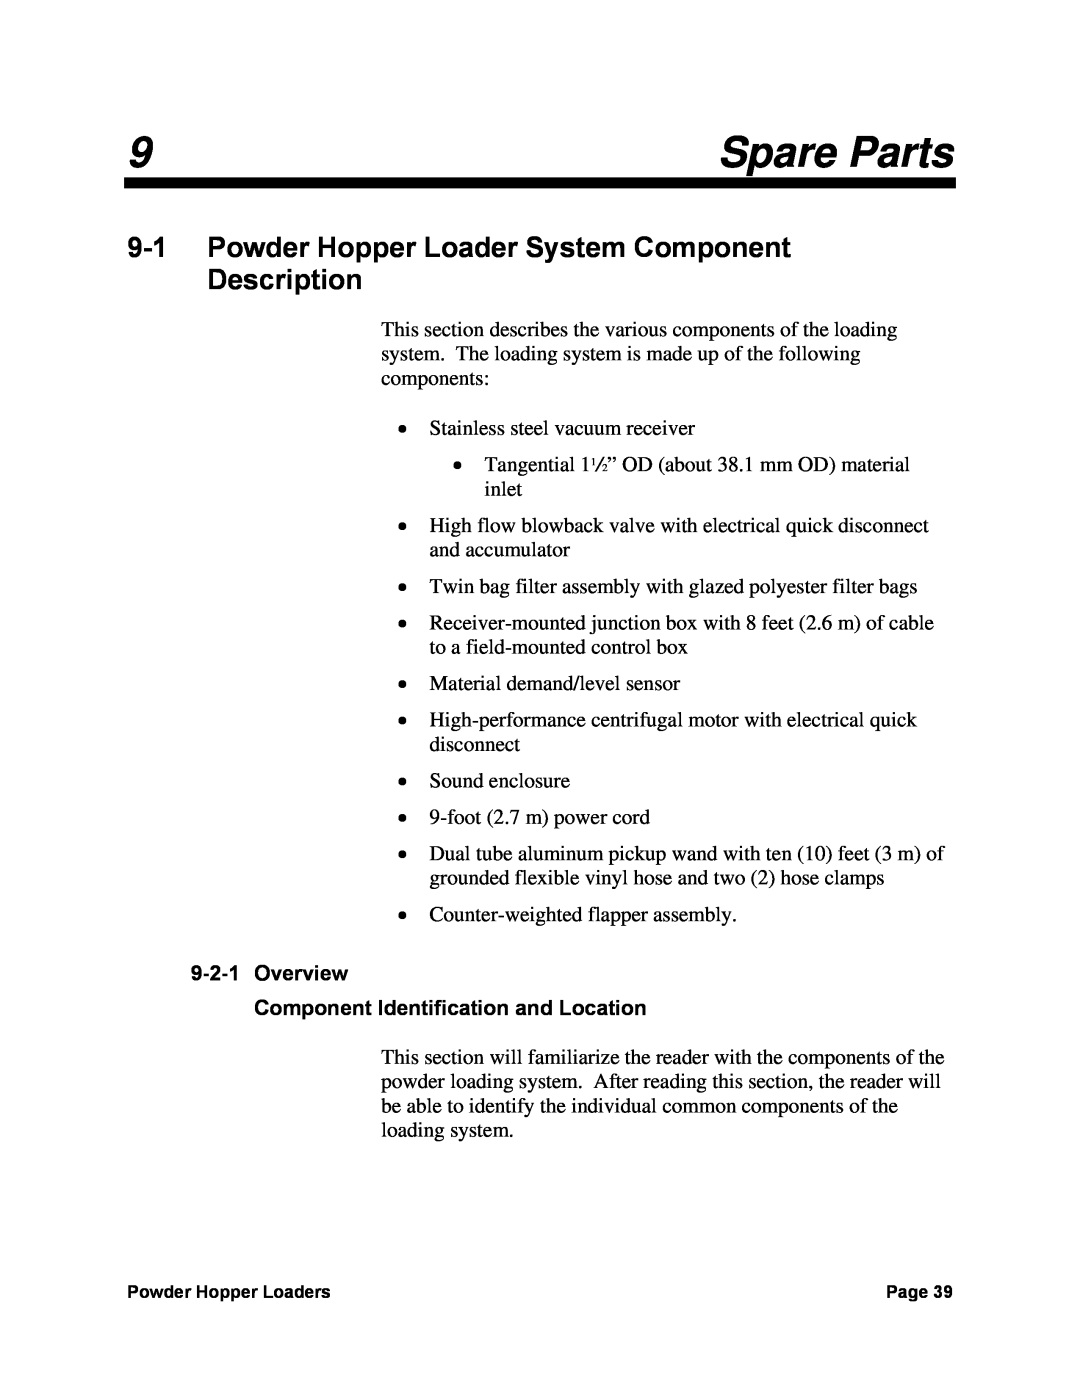 Sterling 882, 0, 238 manual Spare Parts, Powder Hopper Loader System Component Description 